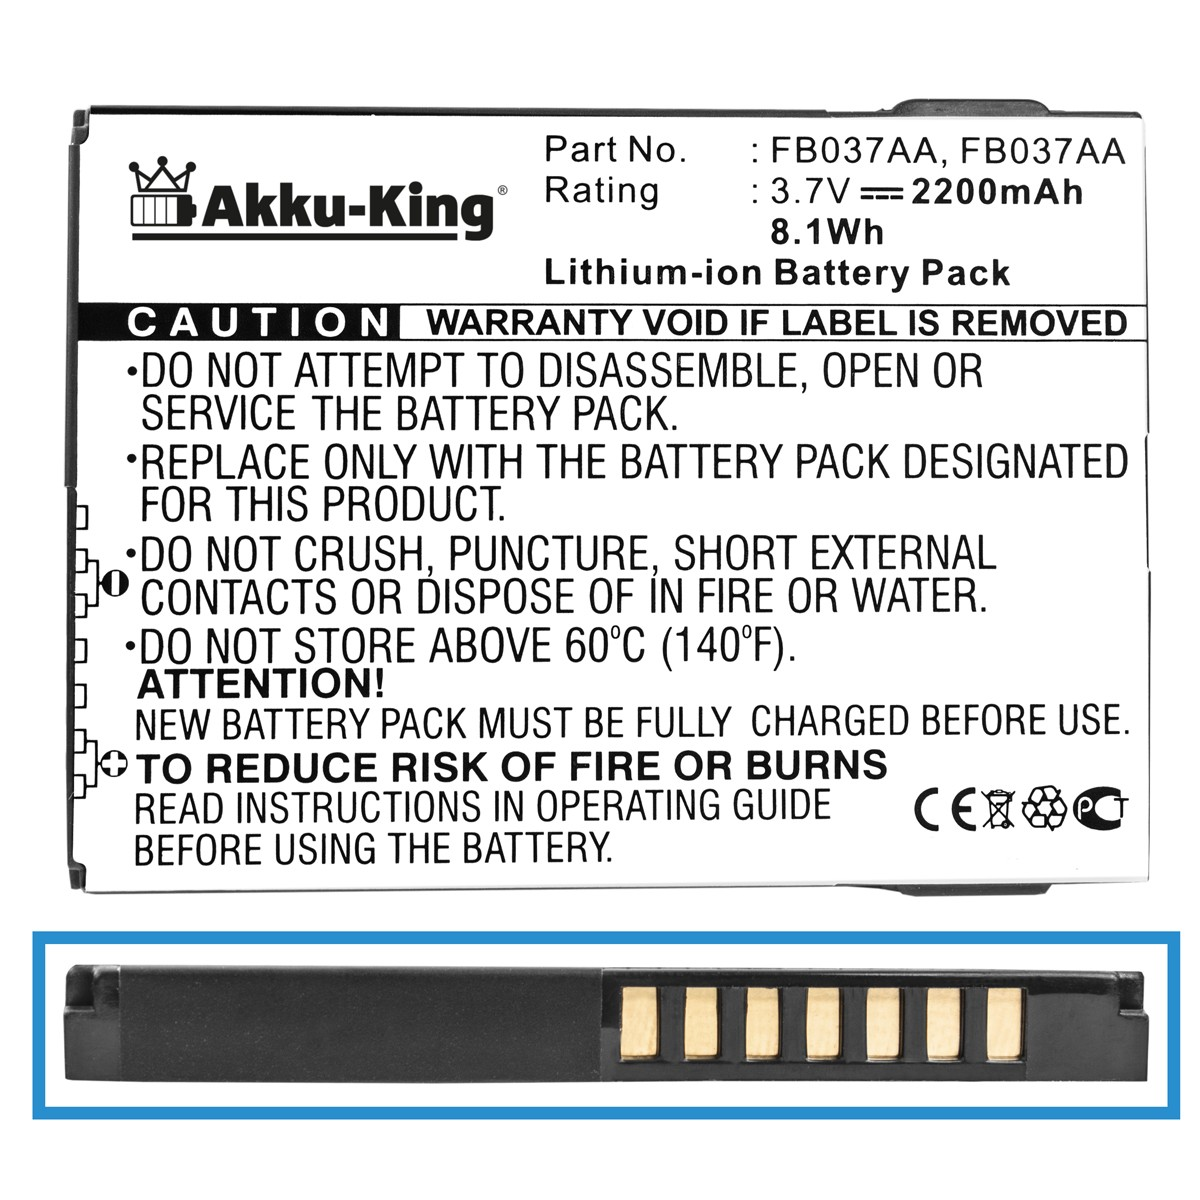 Volt, 410814-001 Akku Handy-Akku, AKKU-KING mit 3.7 Li-Ion HP kompatibel 2200mAh